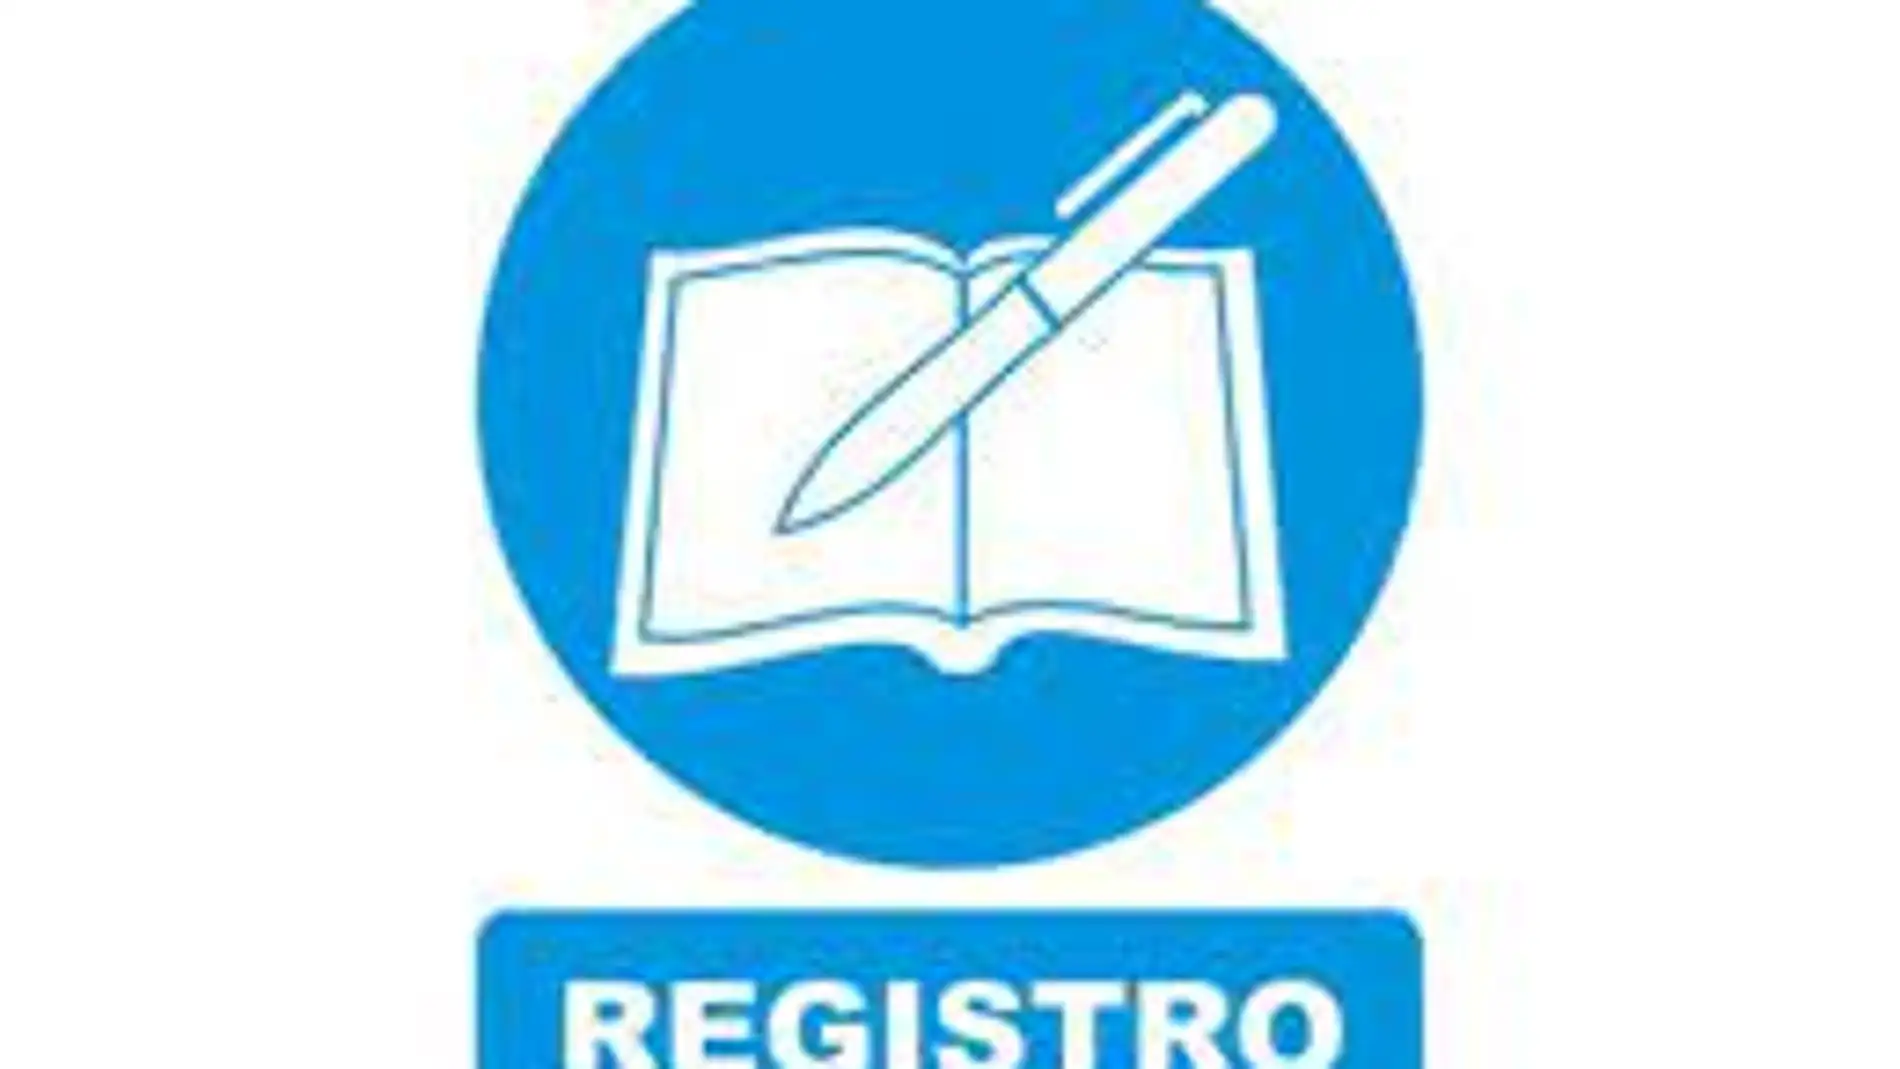 El Gobierno regional ofrecerá información registral de las fincas del Registro de la Propiedad a través del Portal de Urbanismo